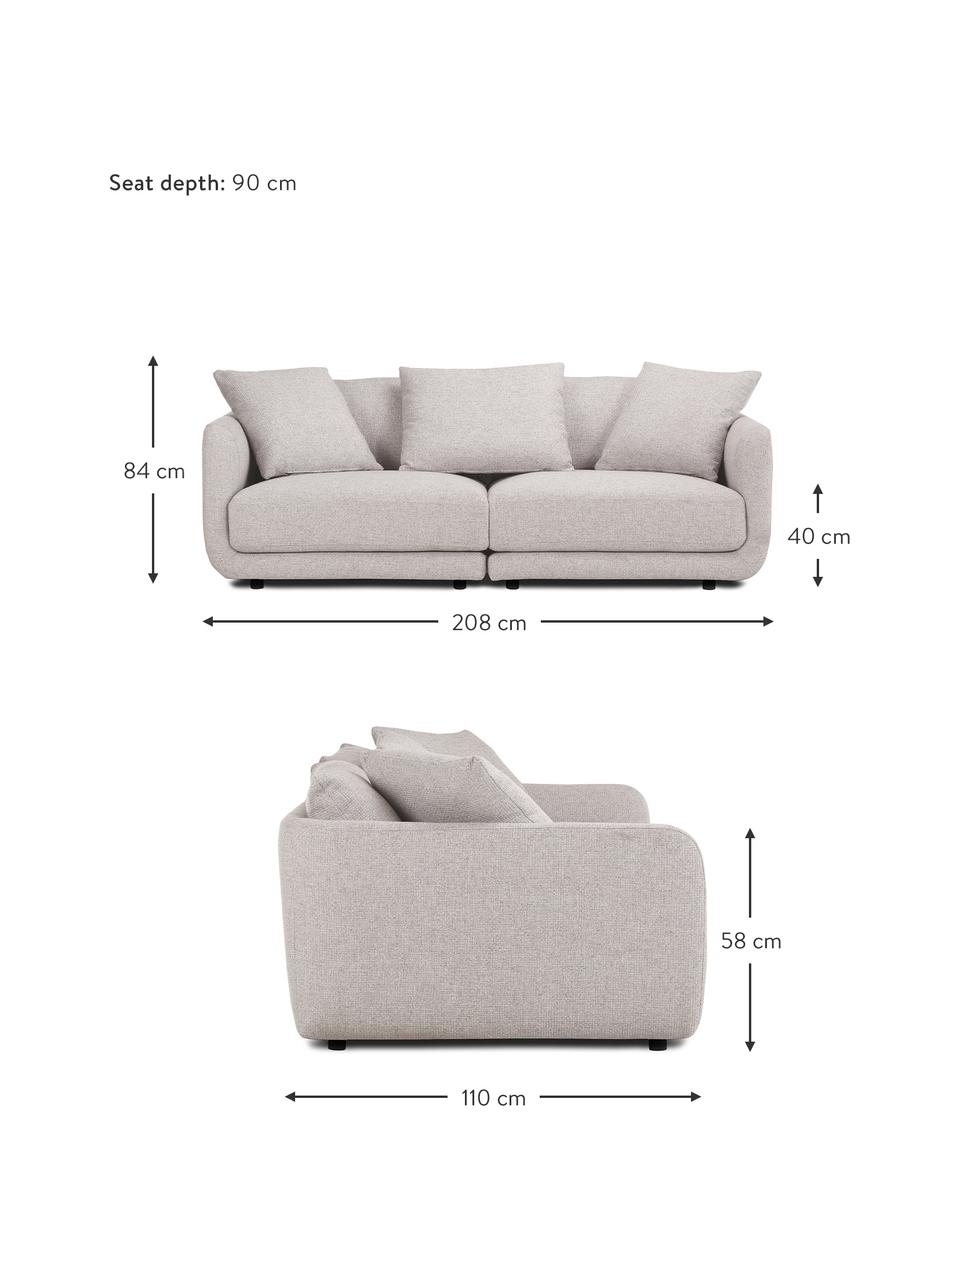 Sofa modułowa Jasmin (3-osobowa), Tapicerka: 100% poliester Dzięki tka, Nogi: tworzywo sztuczne, Jasnoszara tkanina, S 208 x W 84 cm